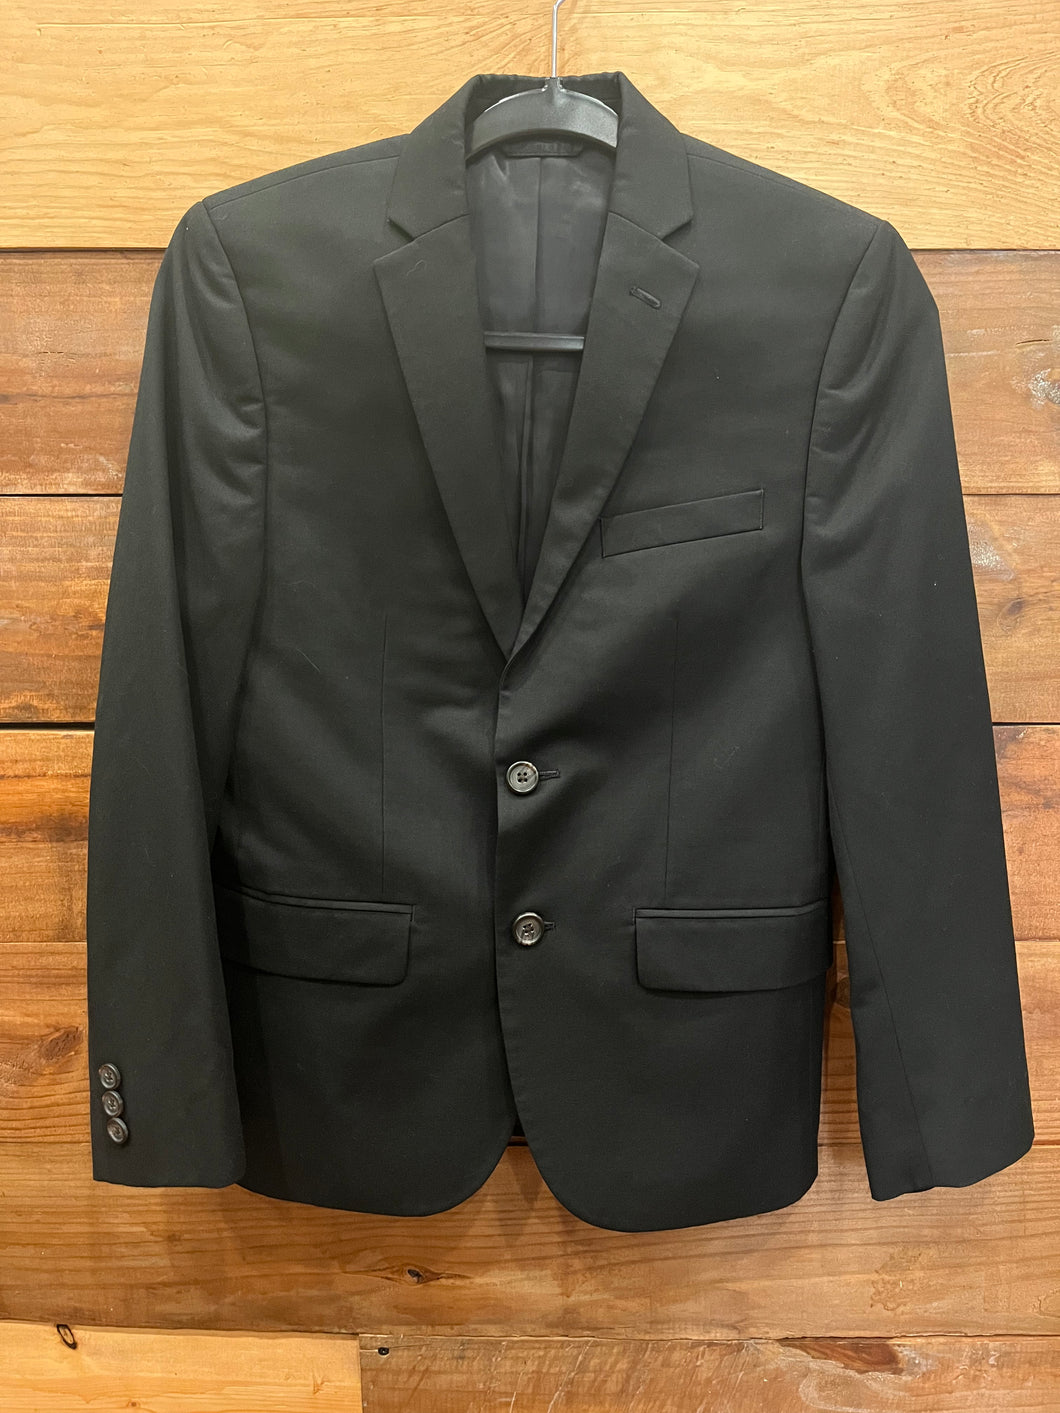 Ralph Lauren Black Suit Coat Size 16R